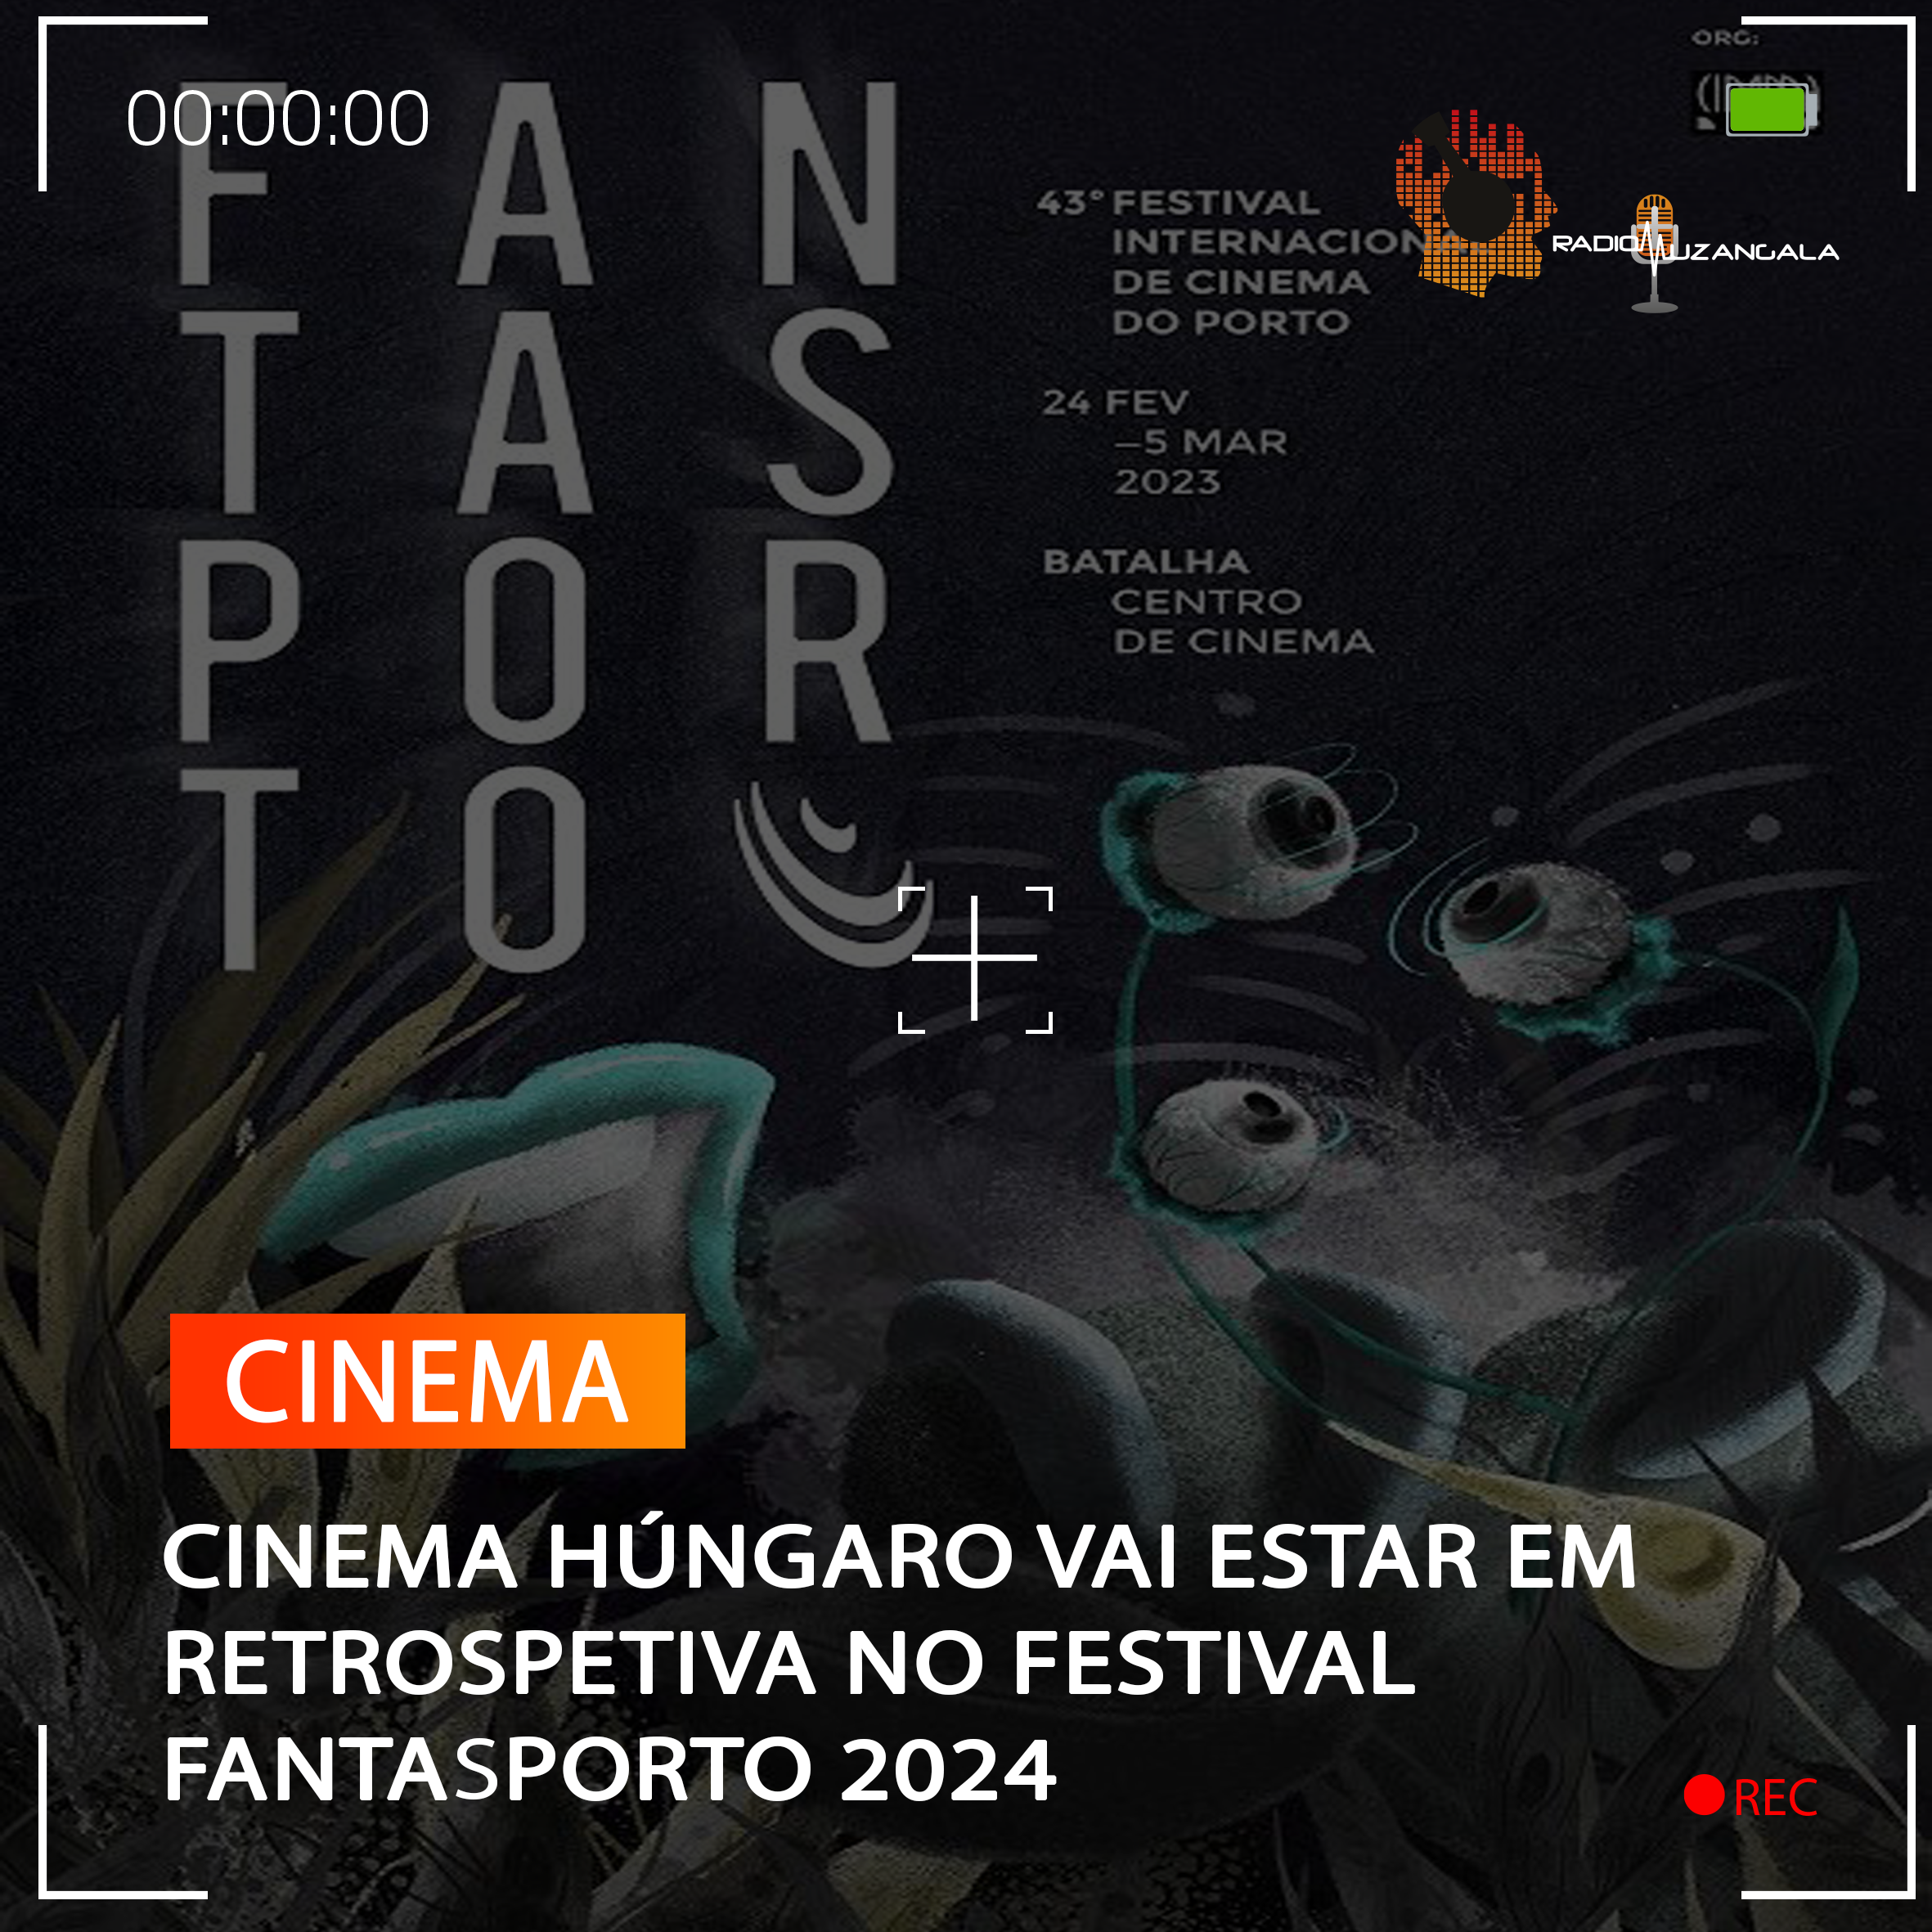  CINEMA HÚNGARO VAI ESTAR EM RETROSPETIVA NO FESTIVAL FANTASPORTO 2024